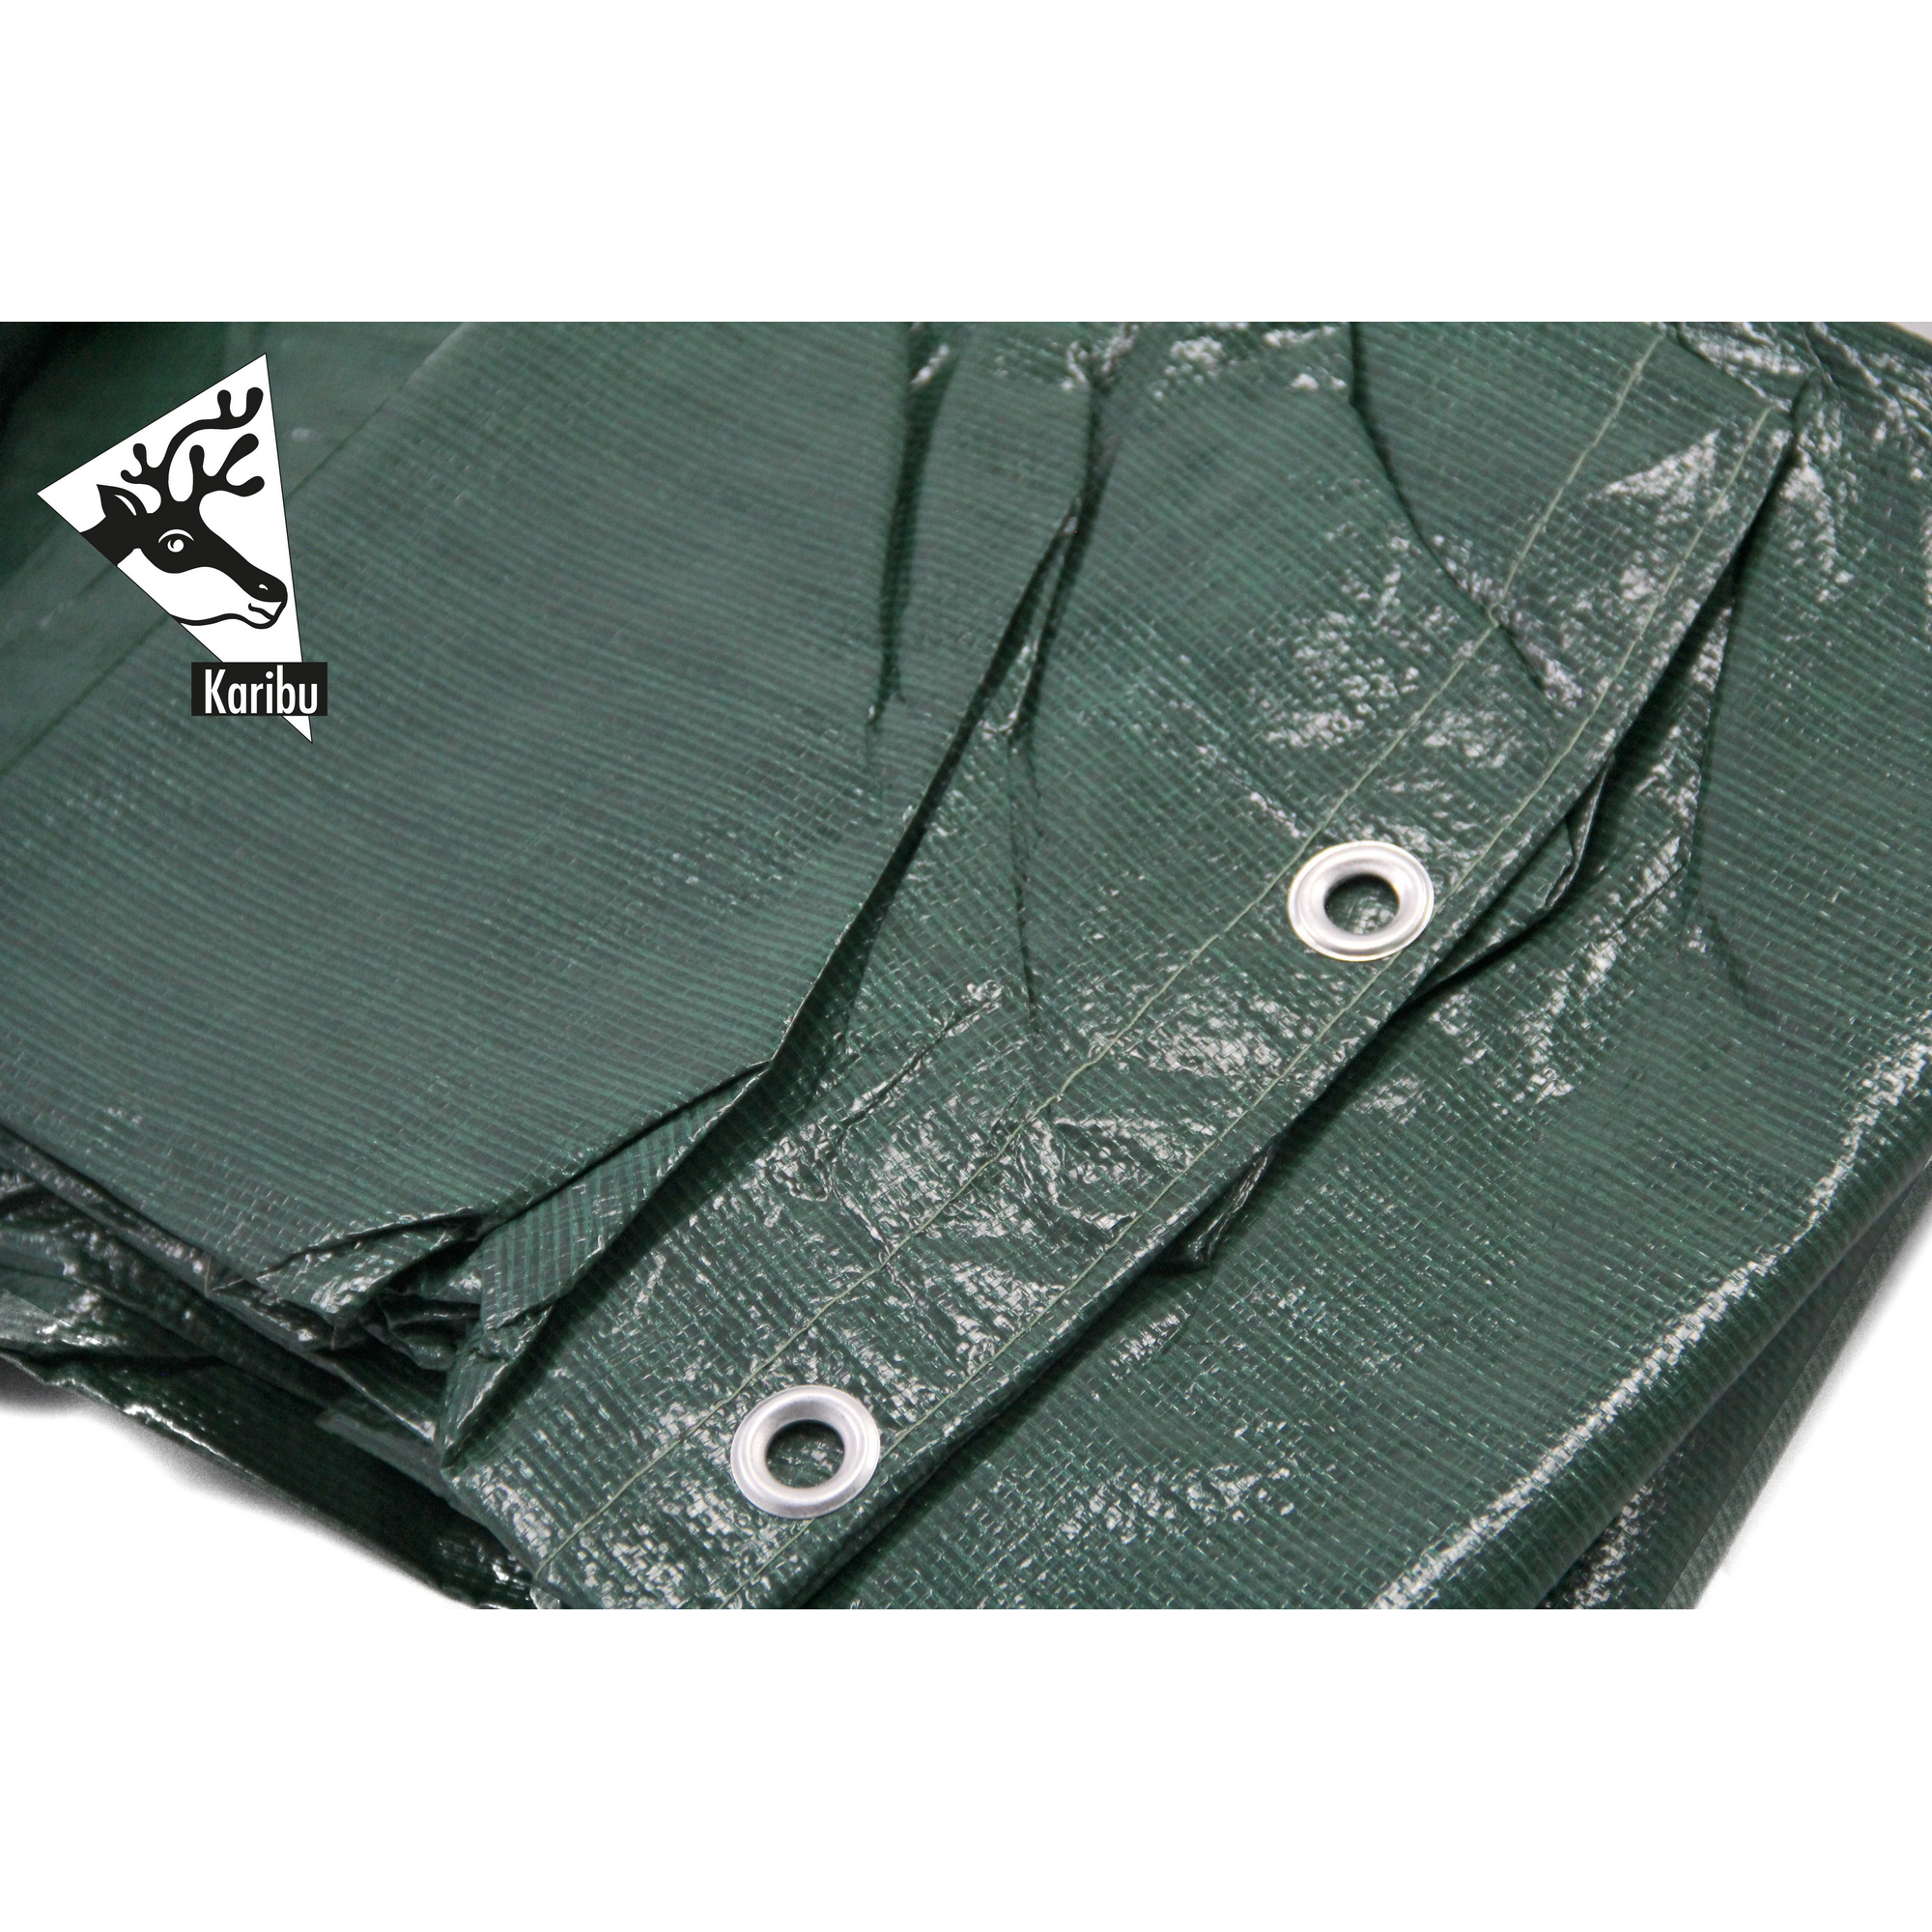 Winterabdeckplane grün 550 x 550 cm, für Massivholzpool Modell 2 + product picture